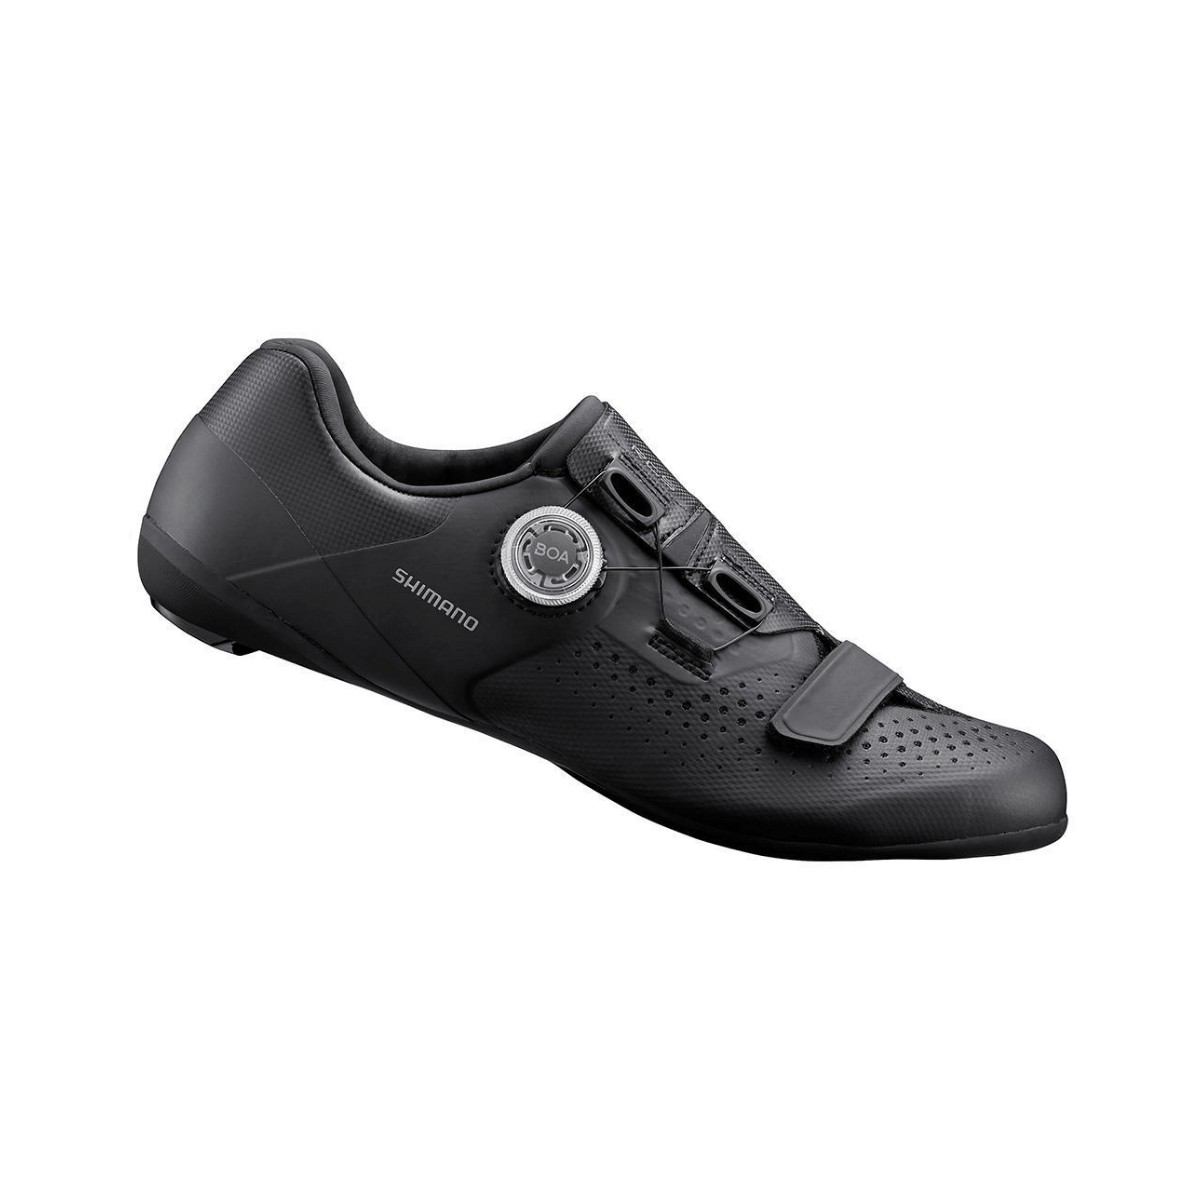 Zapatillas Shimano RC500 Road Negro, Talla 44 - EUR